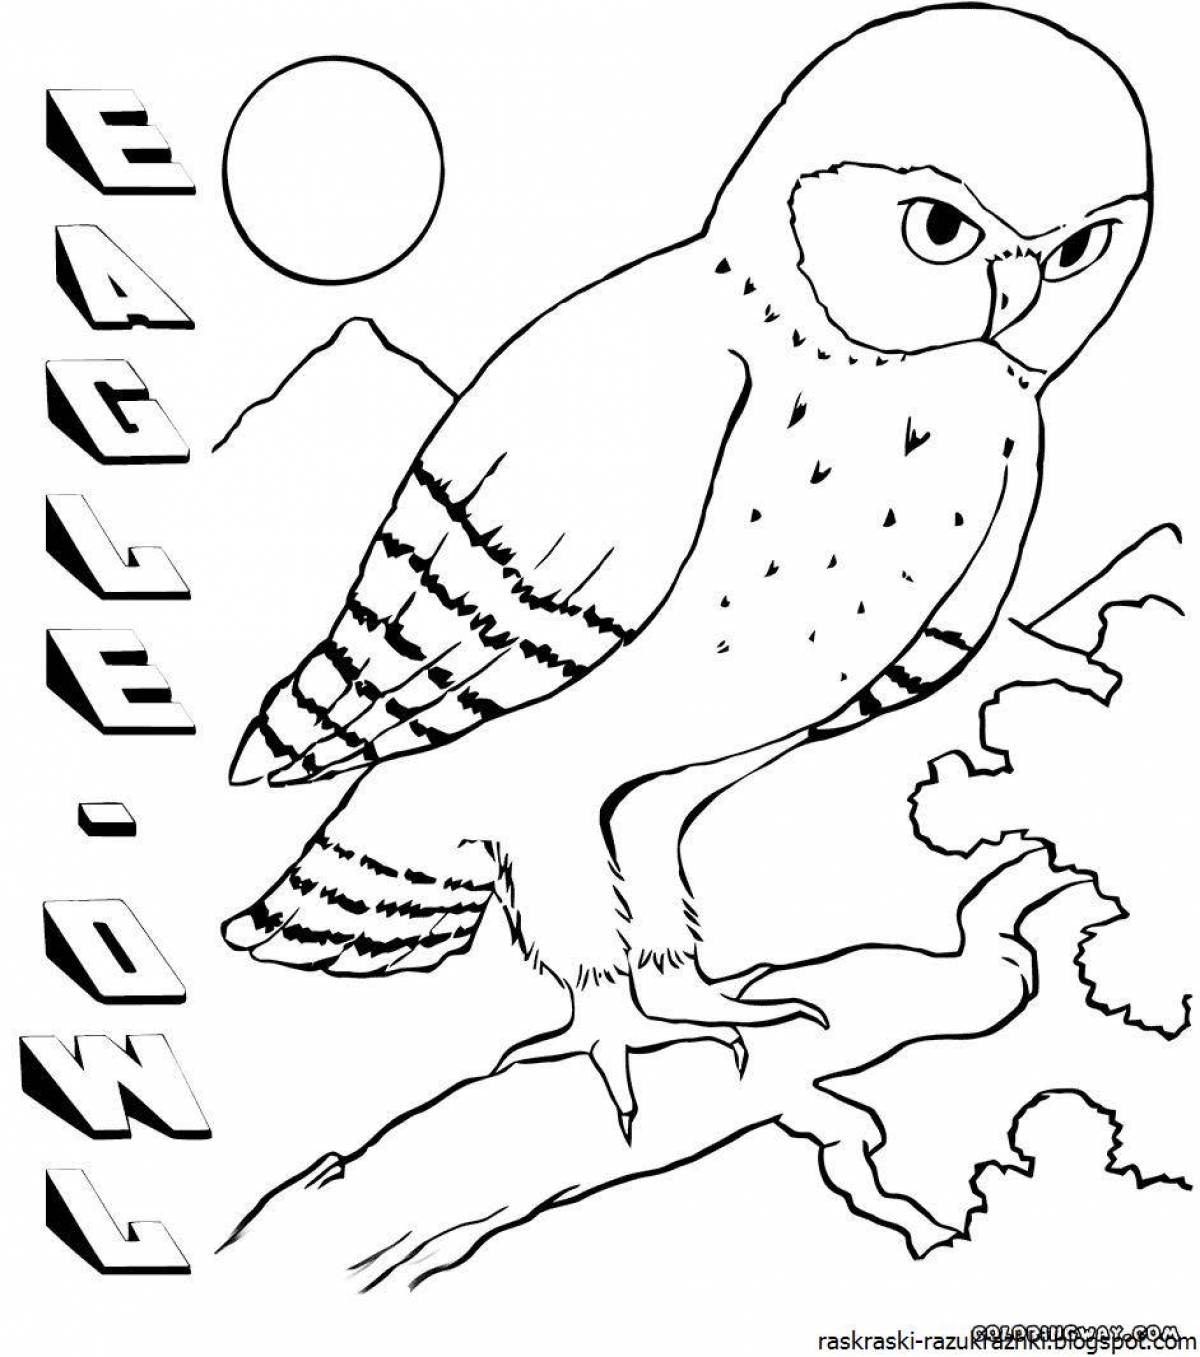 Фантастическая раскраска зимующих птиц для детей 3-4 лет